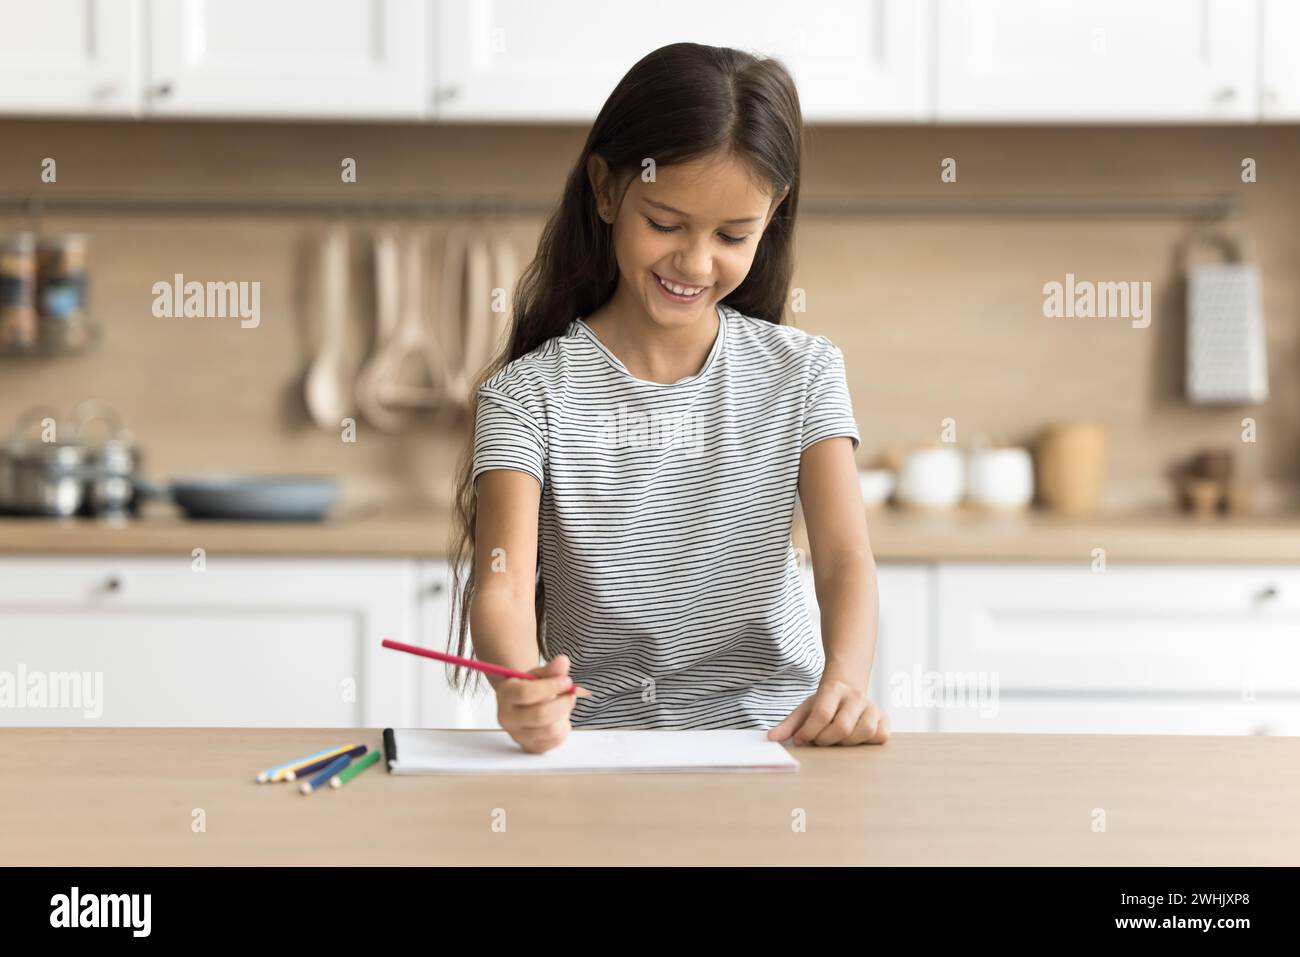 Jeune fille préadolescente positive joyeuse faisant une tâche scolaire artistique à la maison Banque D'Images